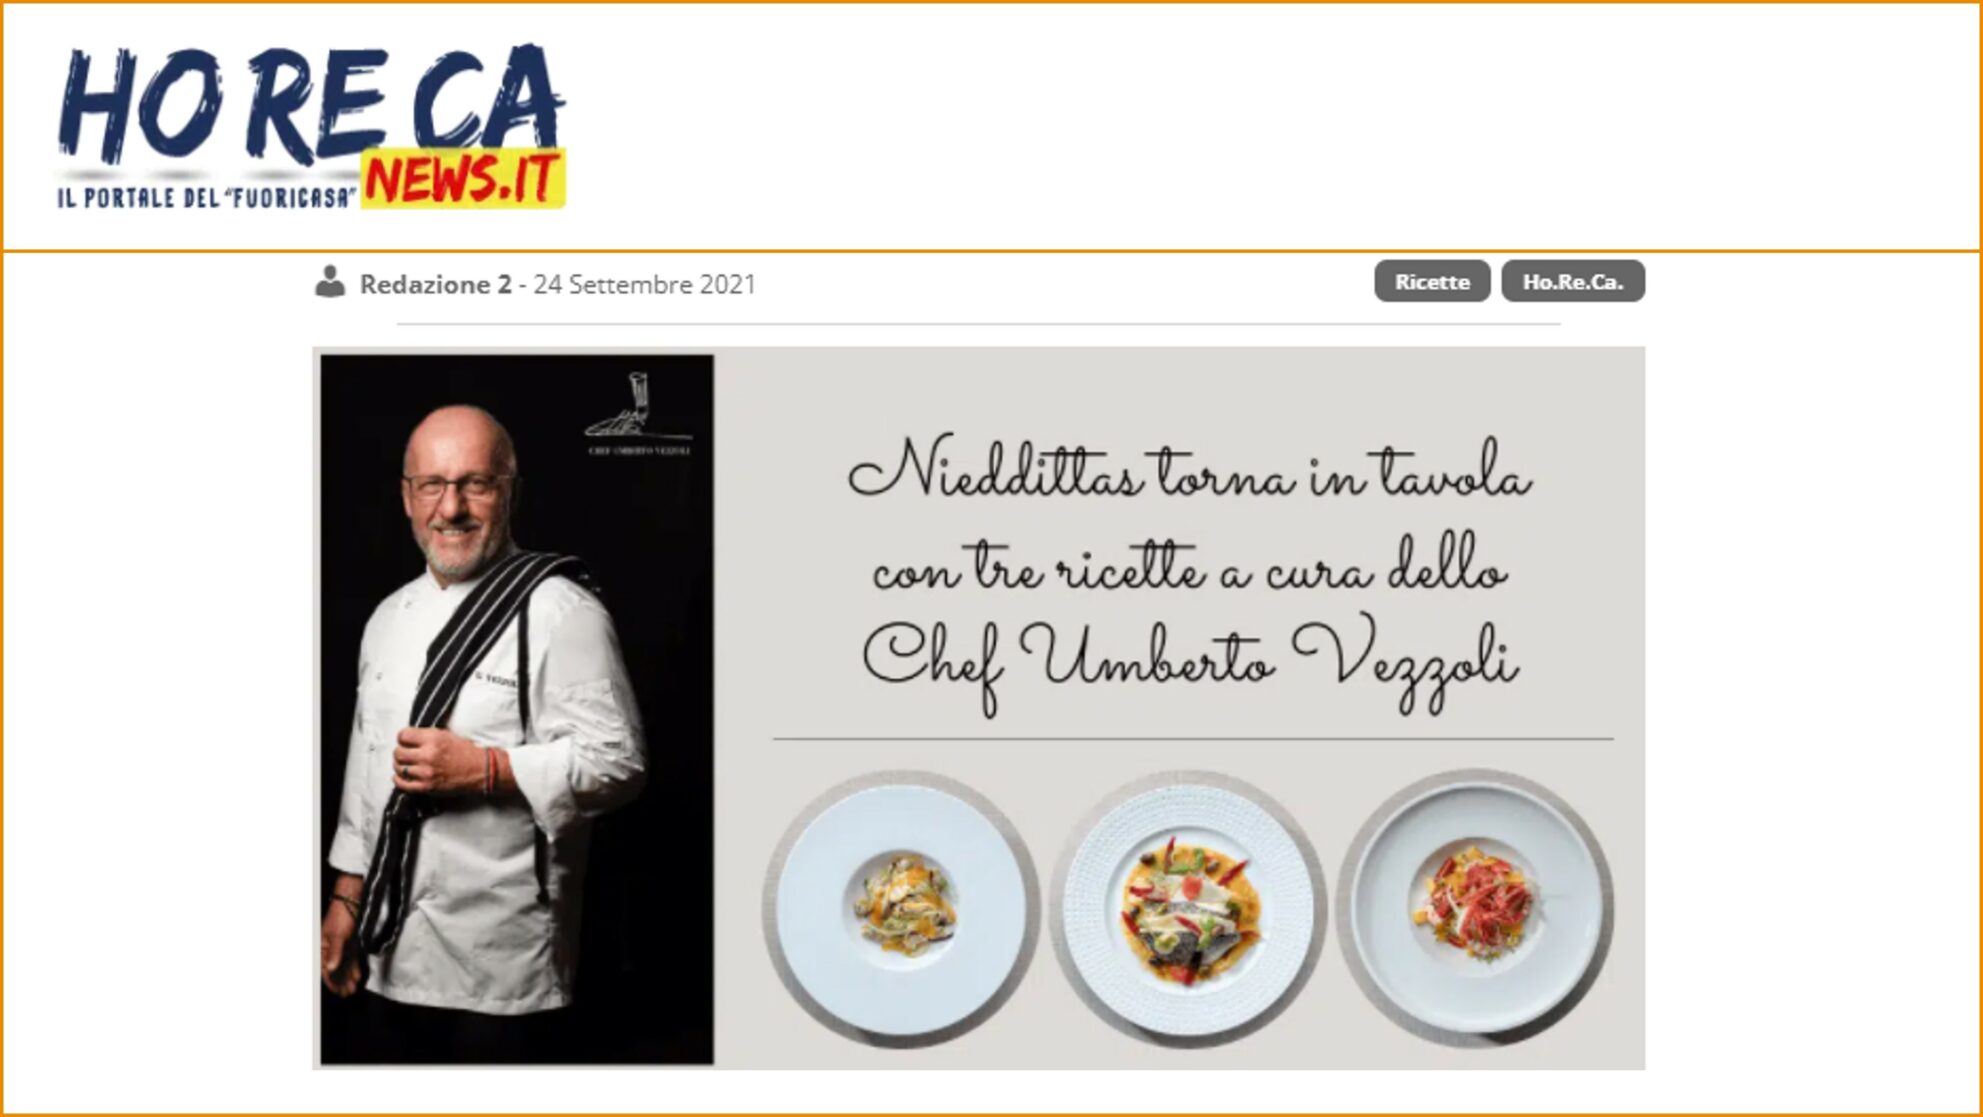 Nieddittas torna in tavola con tre ricette a cura dello Chef Umberto Vezzoli